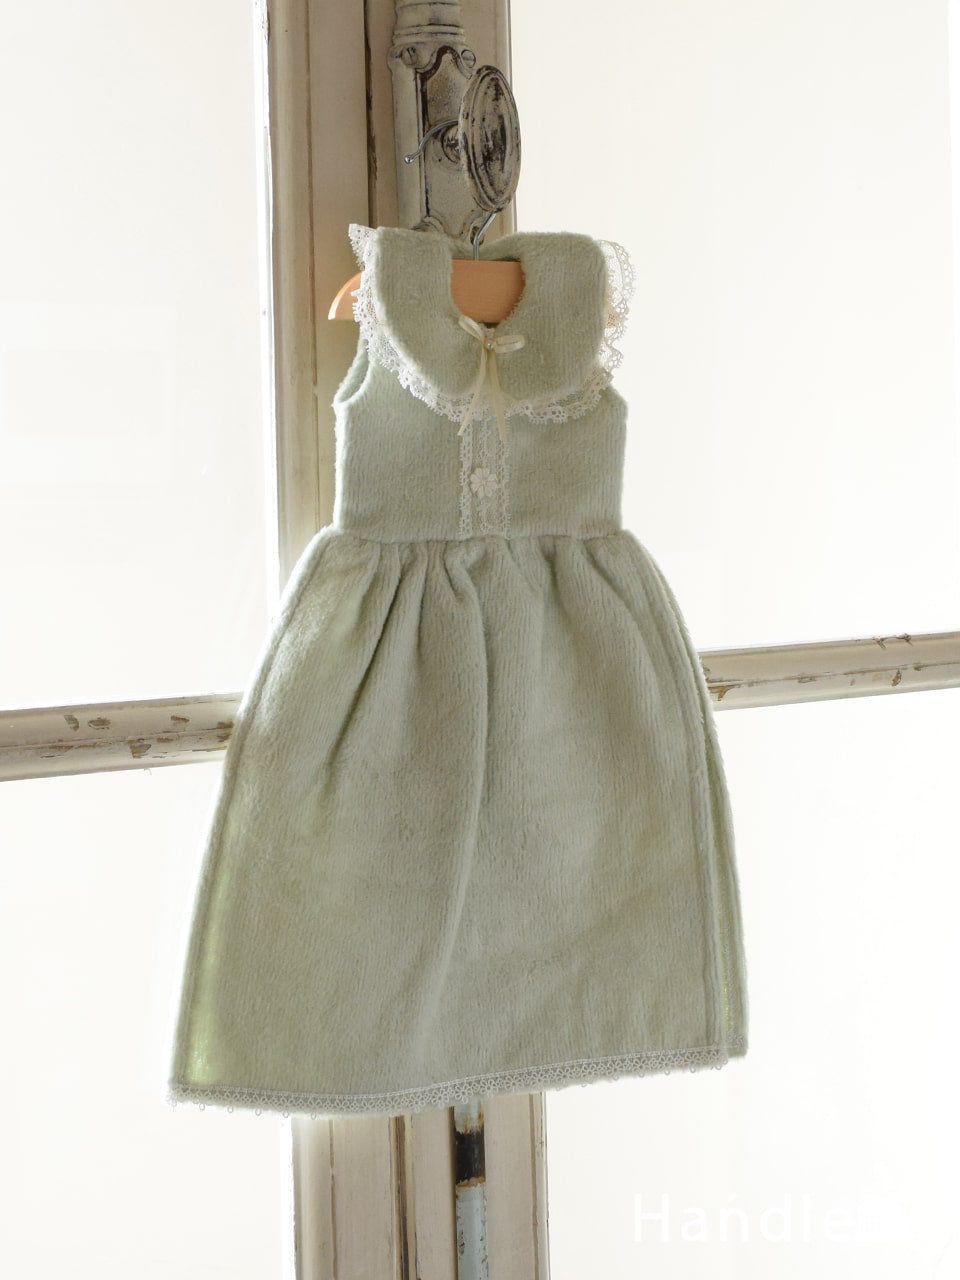 ベビードレス型のおしゃれなタオル、ハンガー付きのドレスタオル（GR） (n20-162)